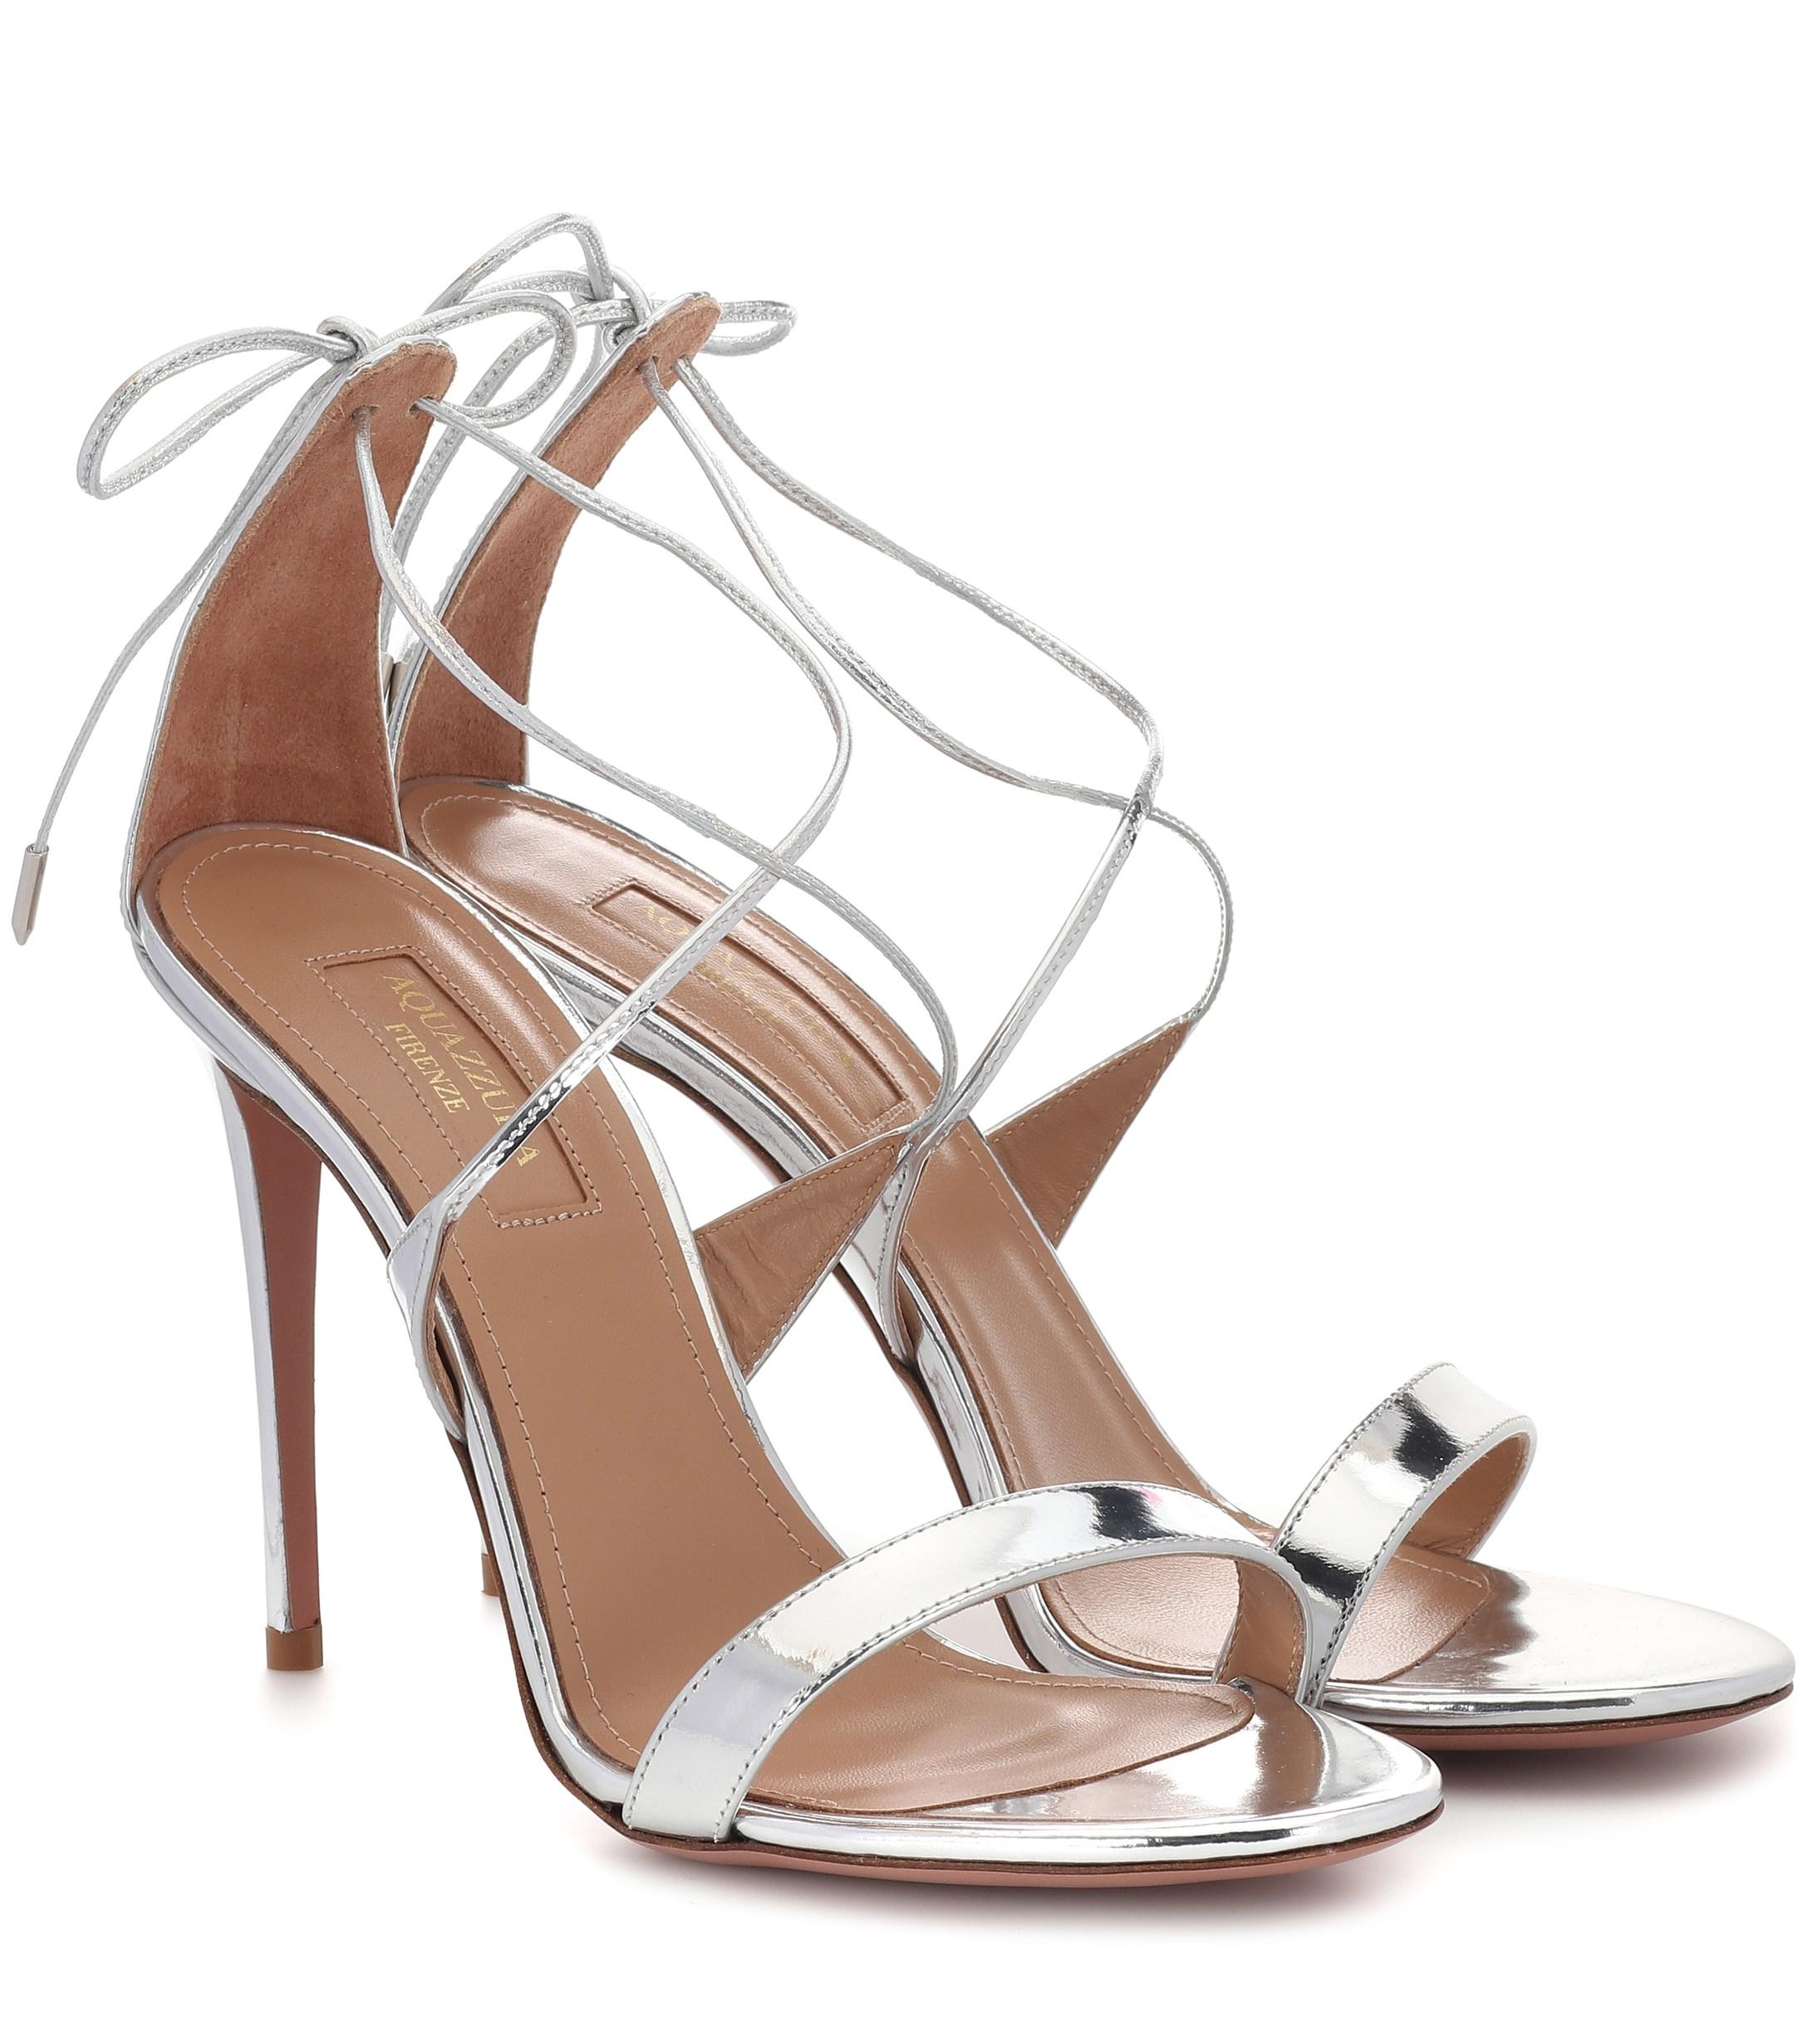 Aquazzura Linda 105 Patent Leather Sandals in Metallic | Lyst